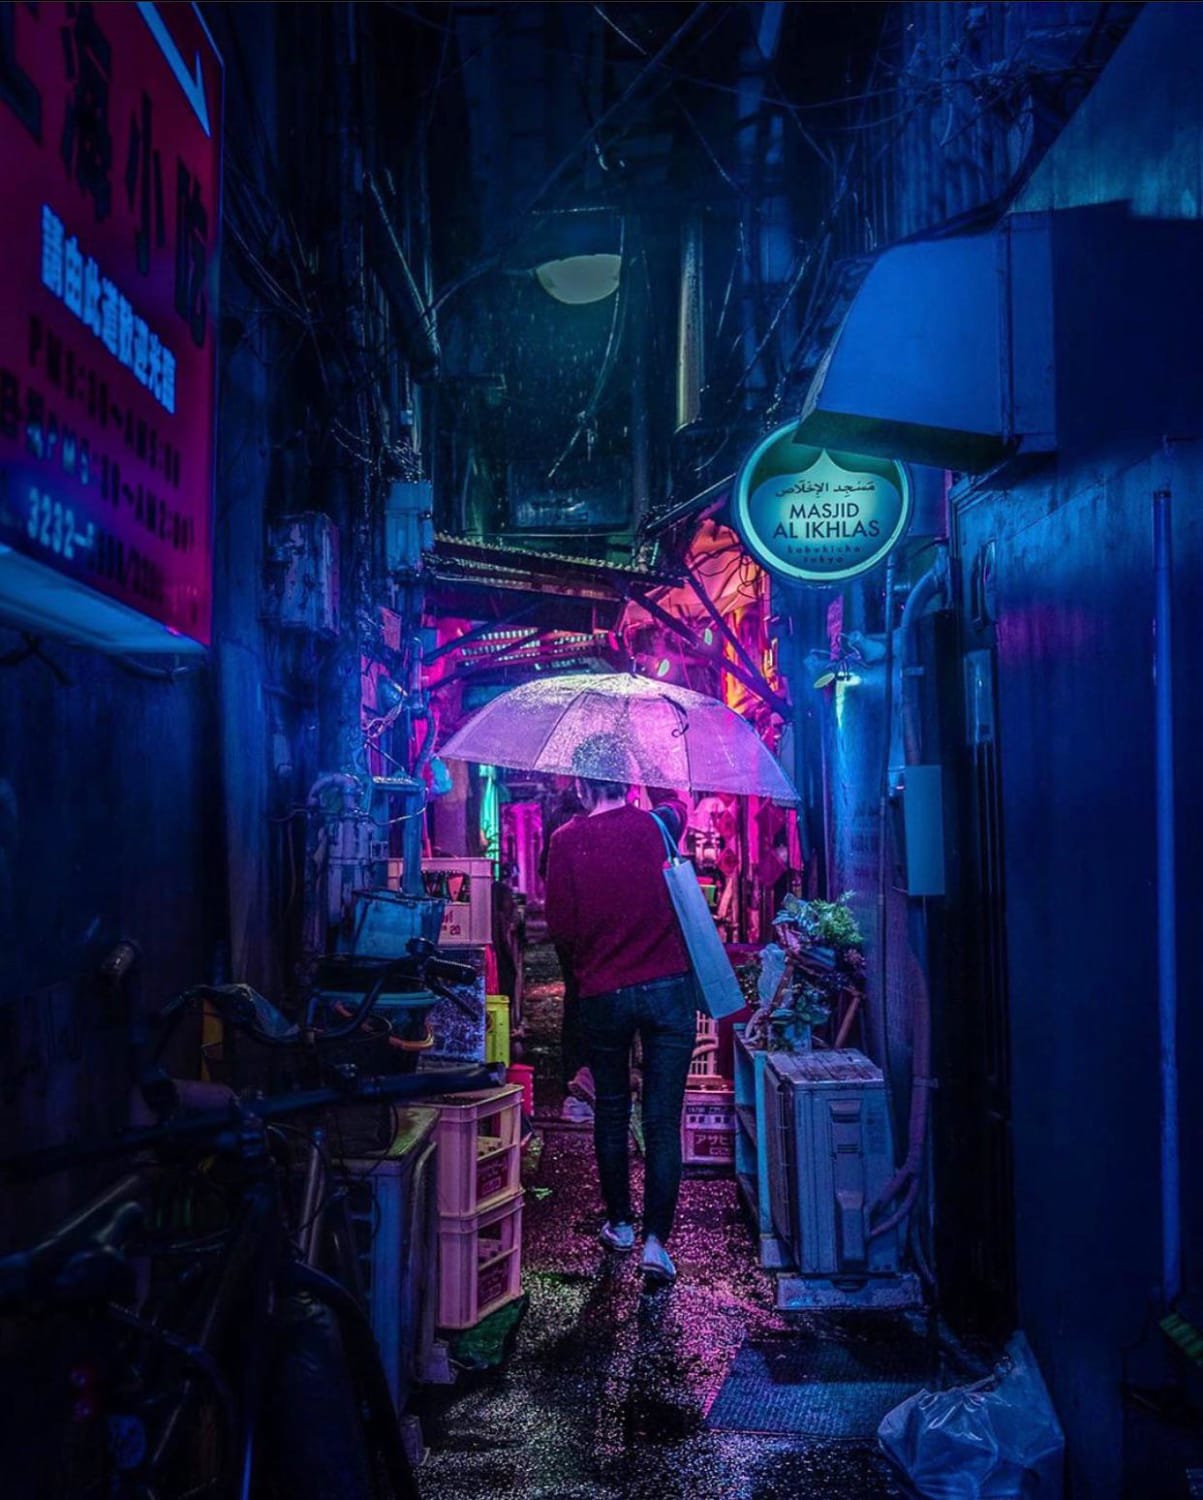 Tokyo’s underground alleyways